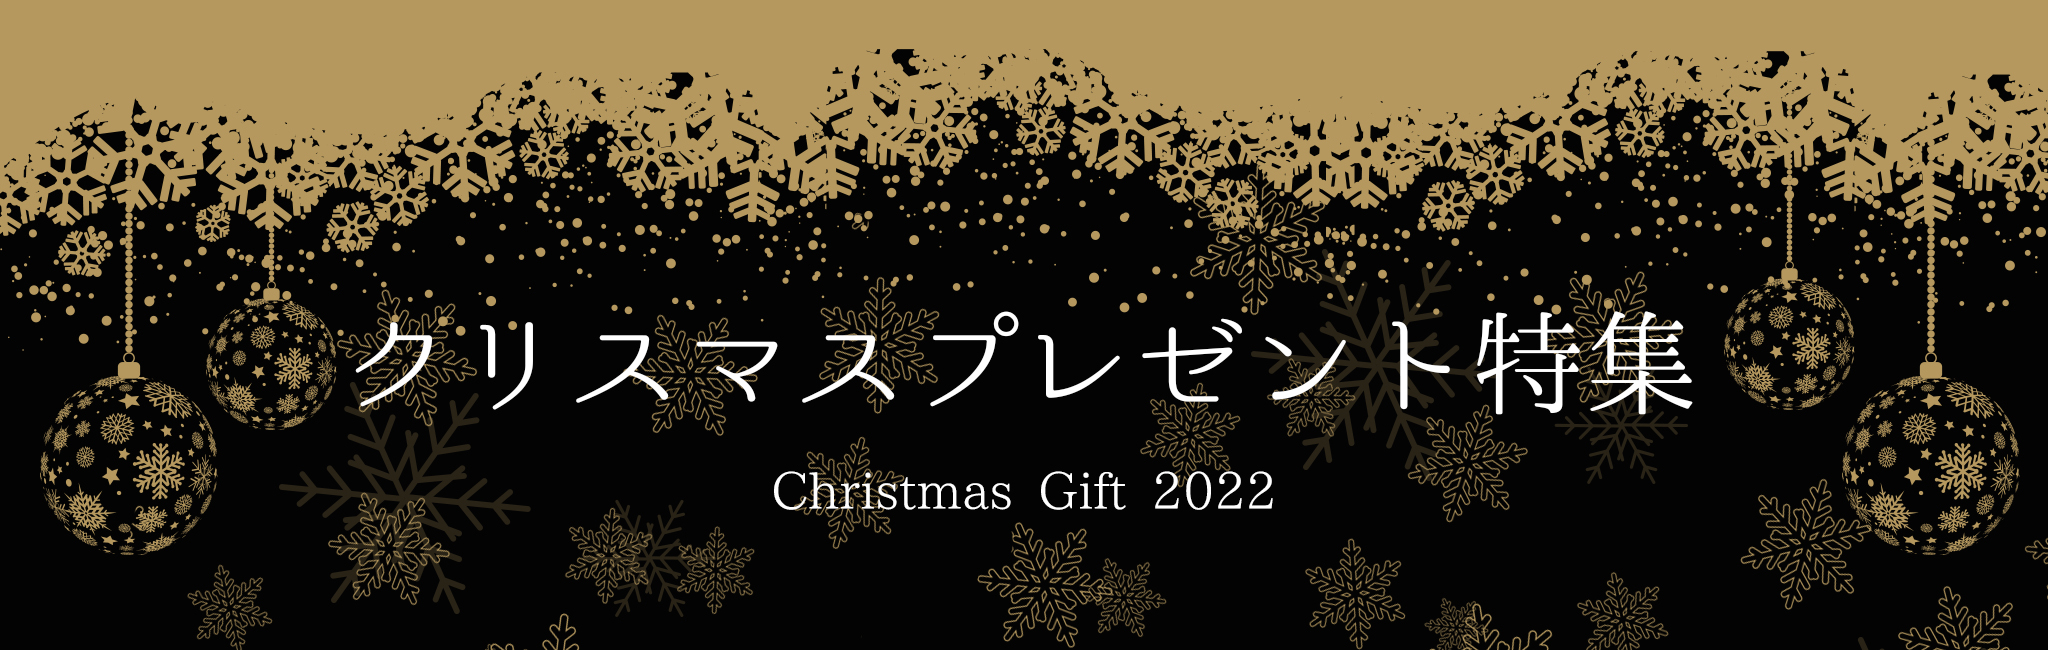 クリスマス2022特集TOP